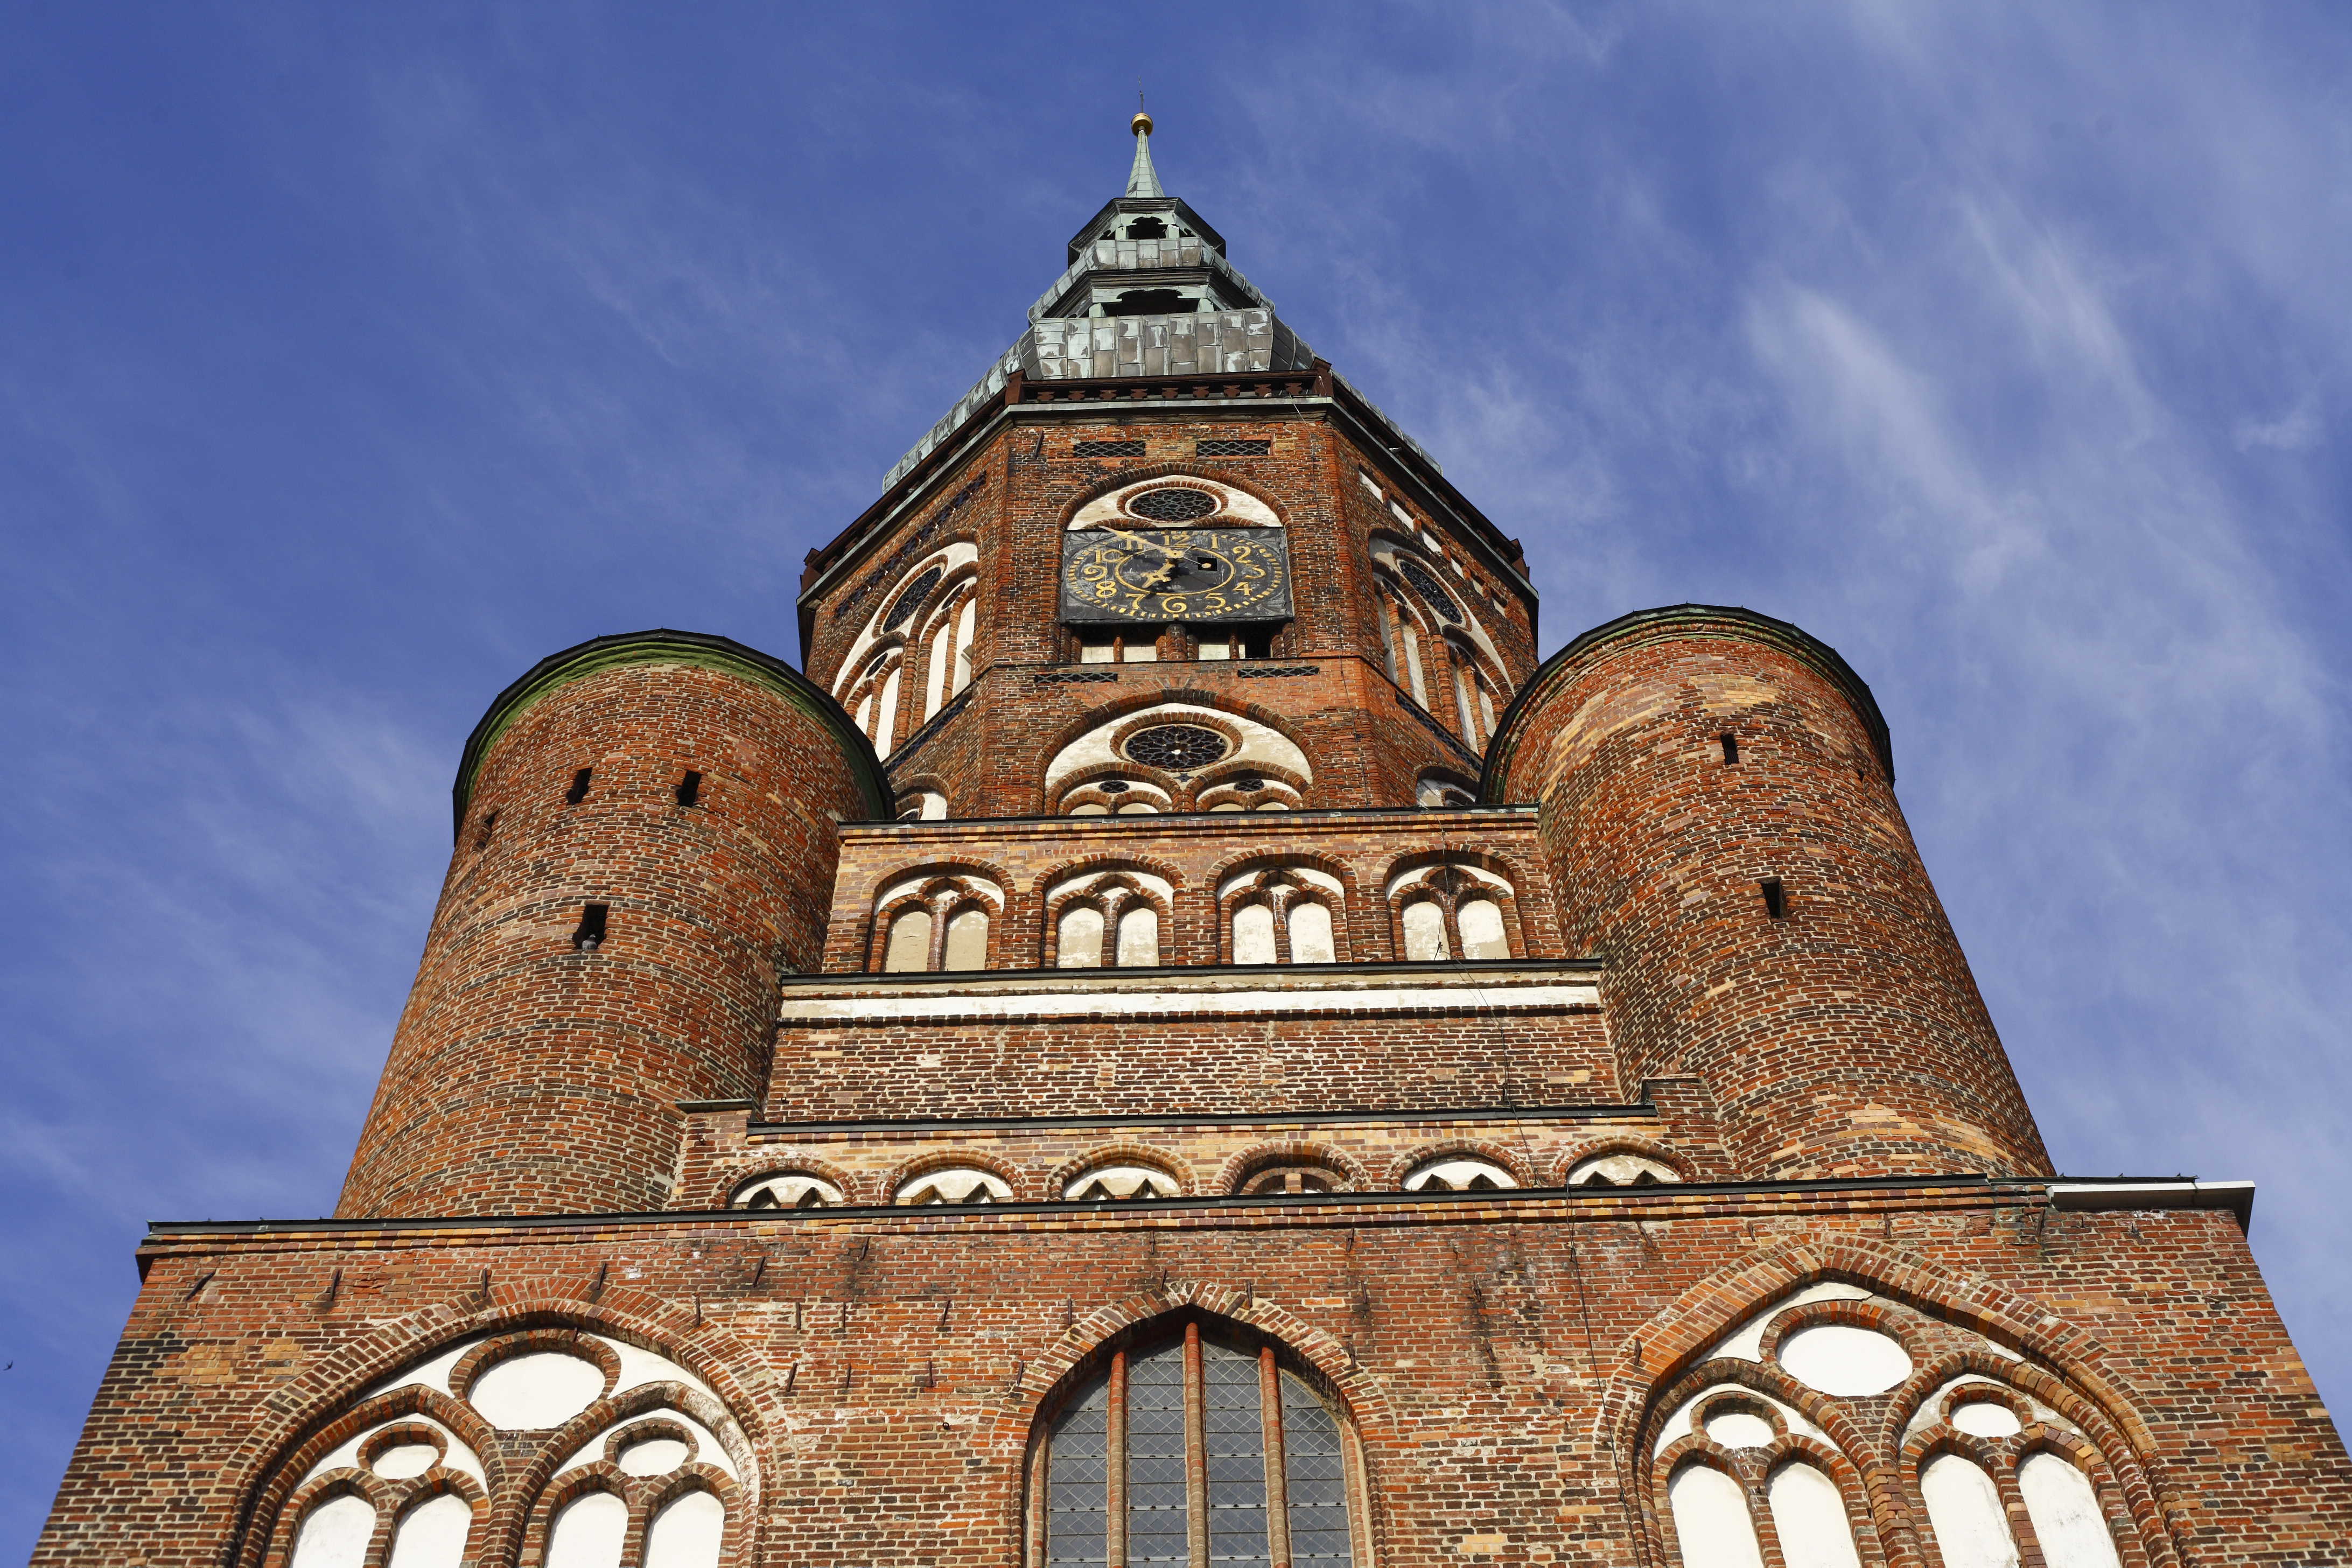 Blick von unten auf den Turm des Greifswalder Doms St. Nikolai